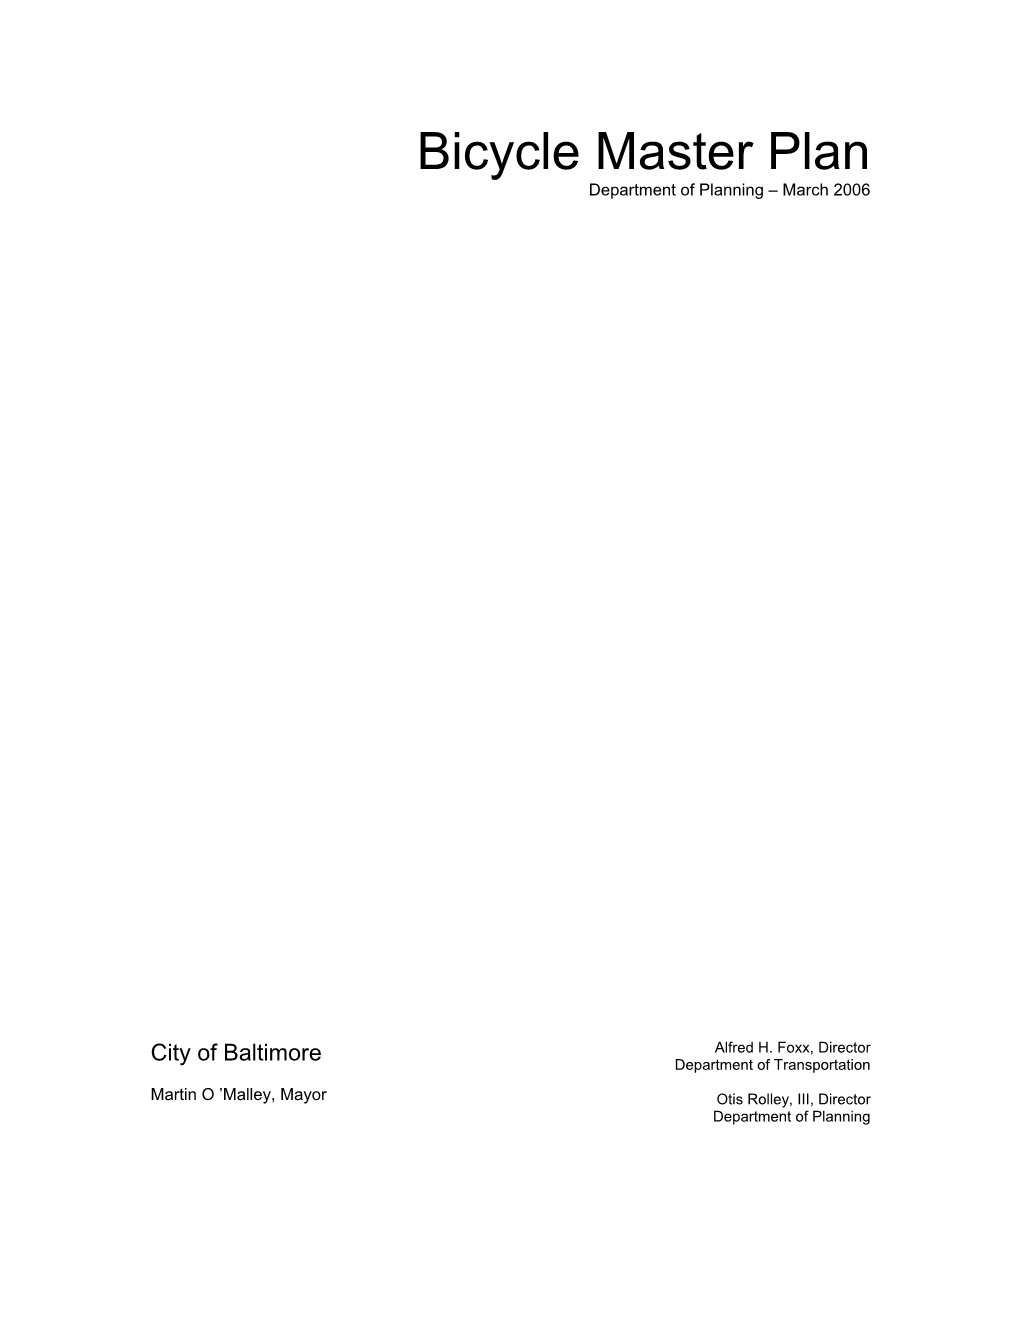 Baltimore City Bicycle Master Plan